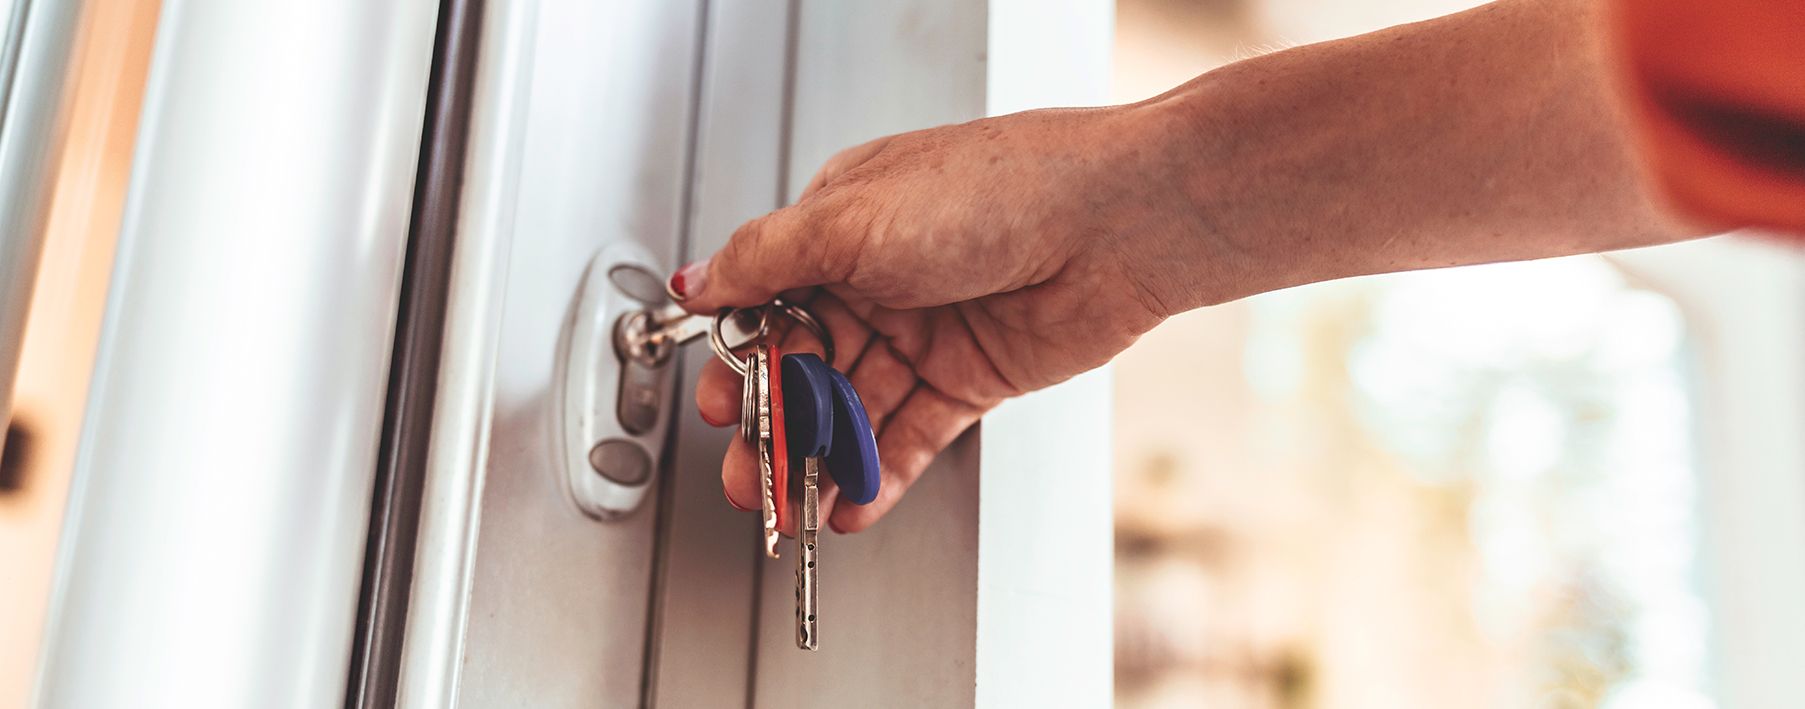 A woman's hand using keys to unlock her front door